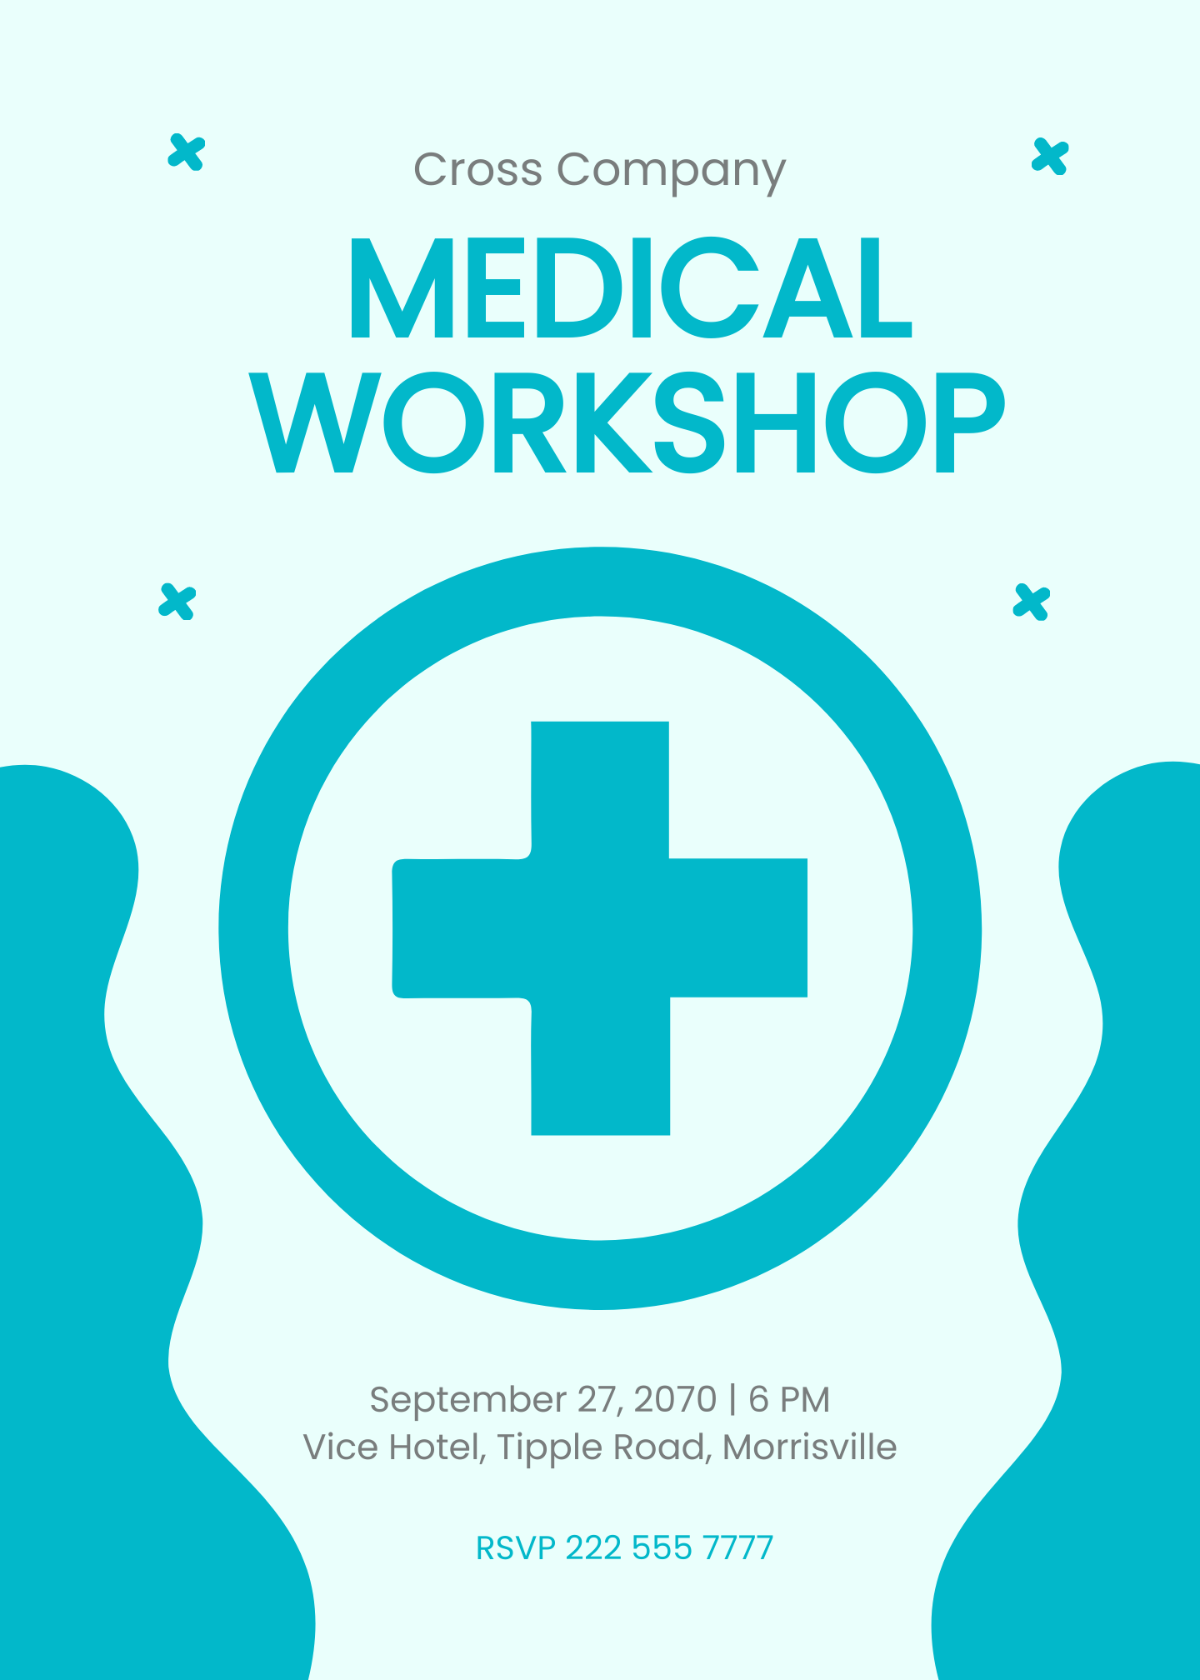 Medical Workshop Invitation